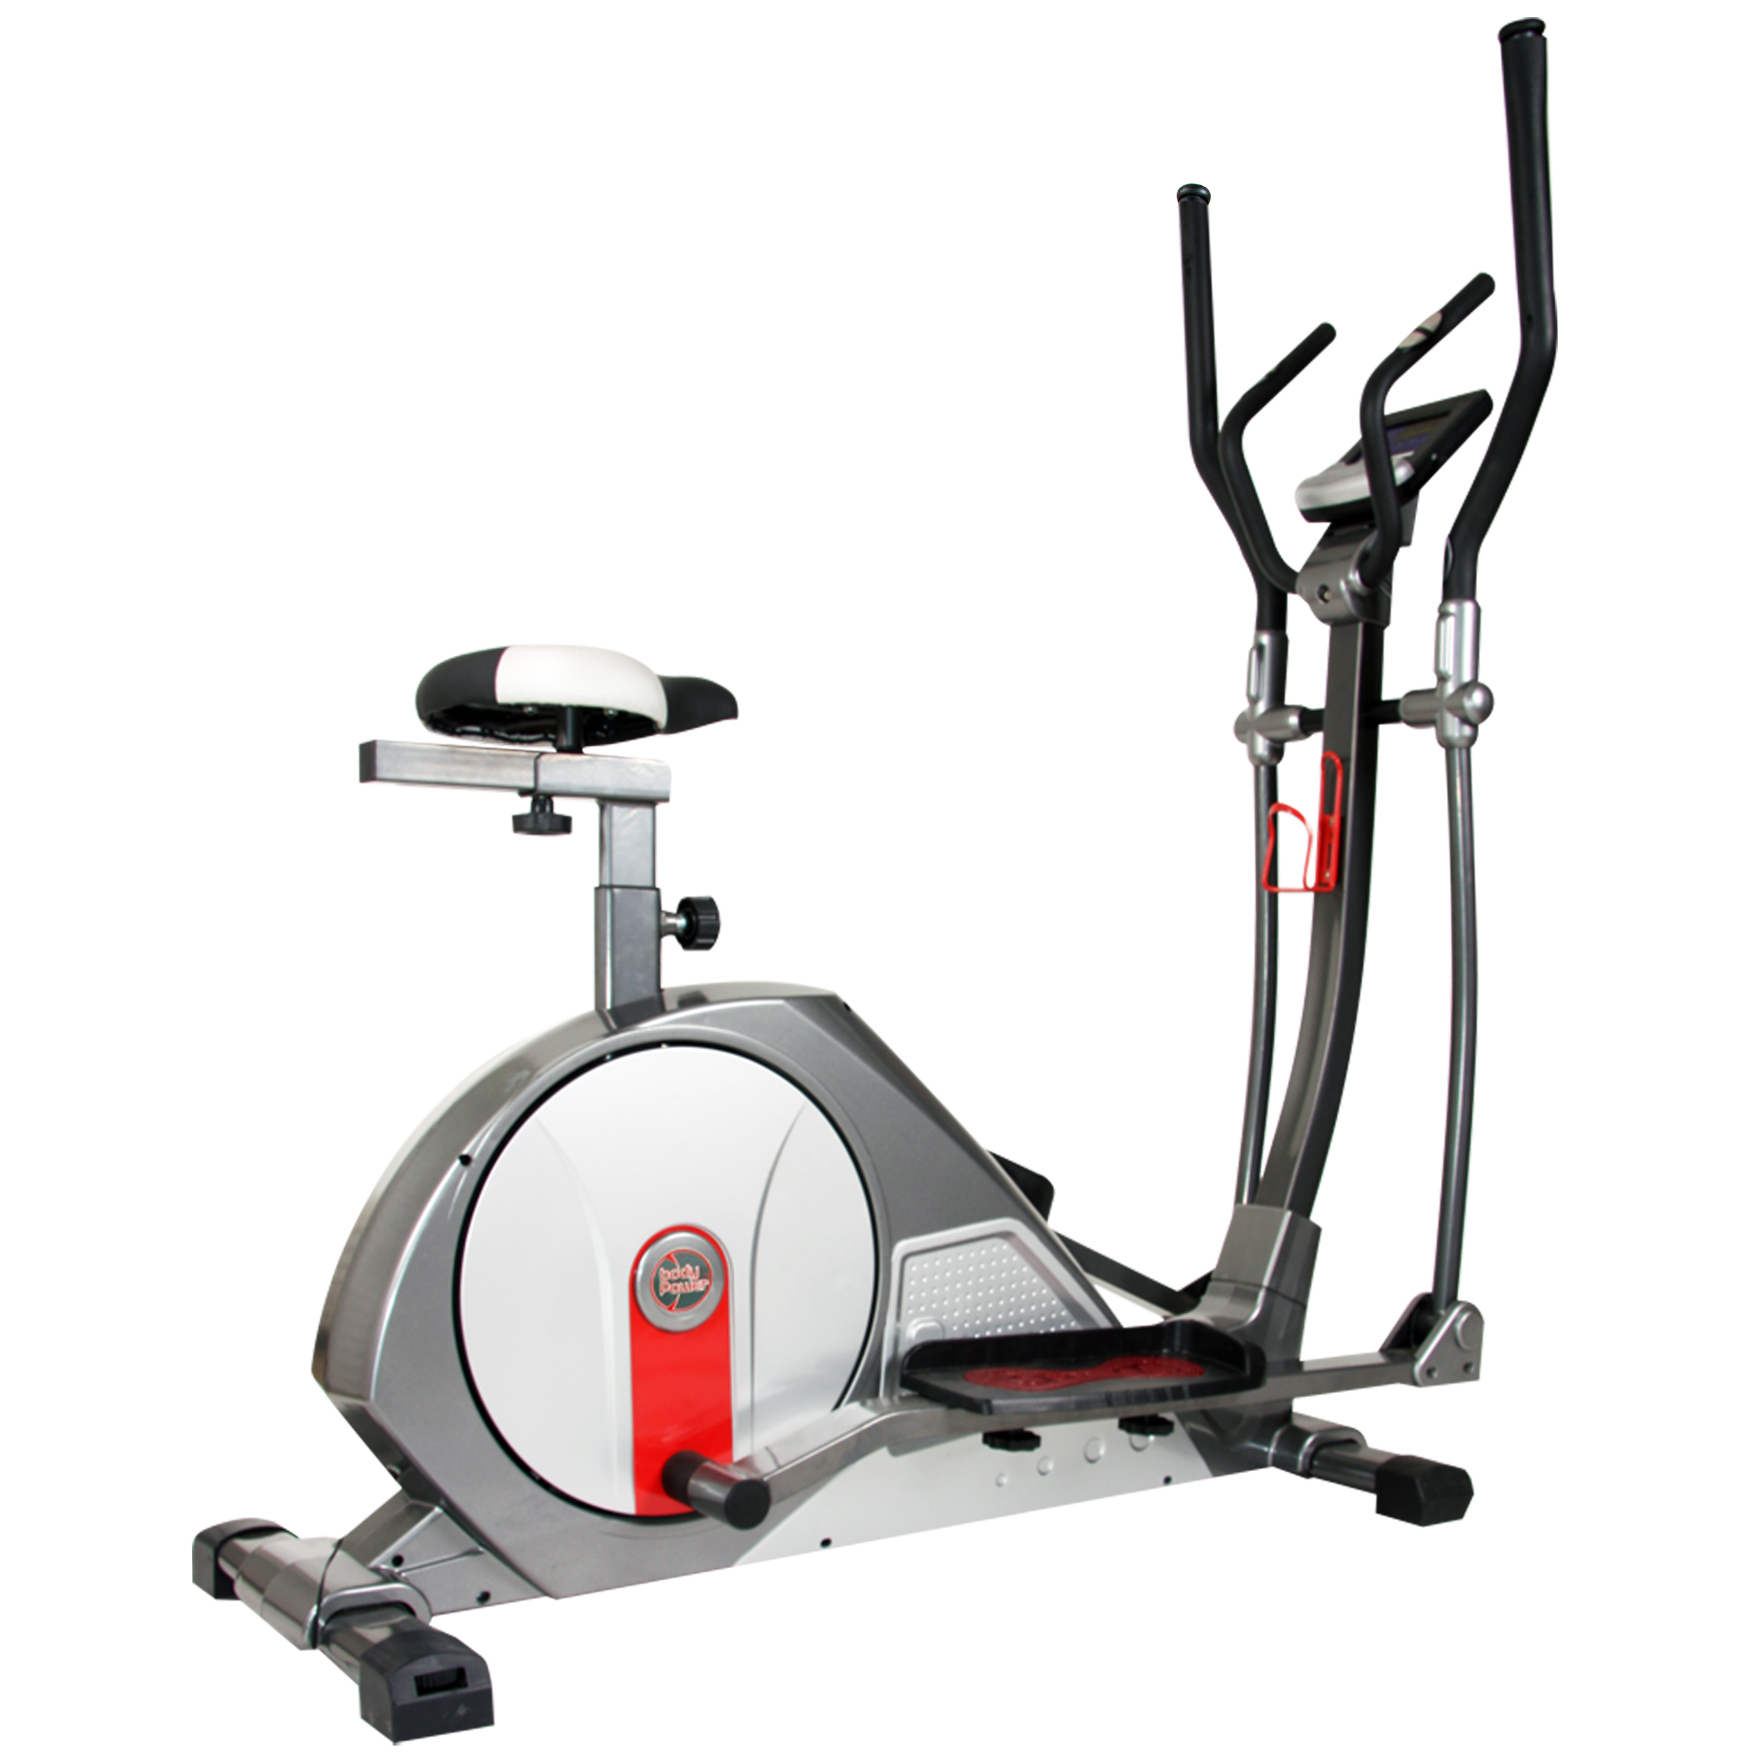 Official Body flex sports elliptical machine parts